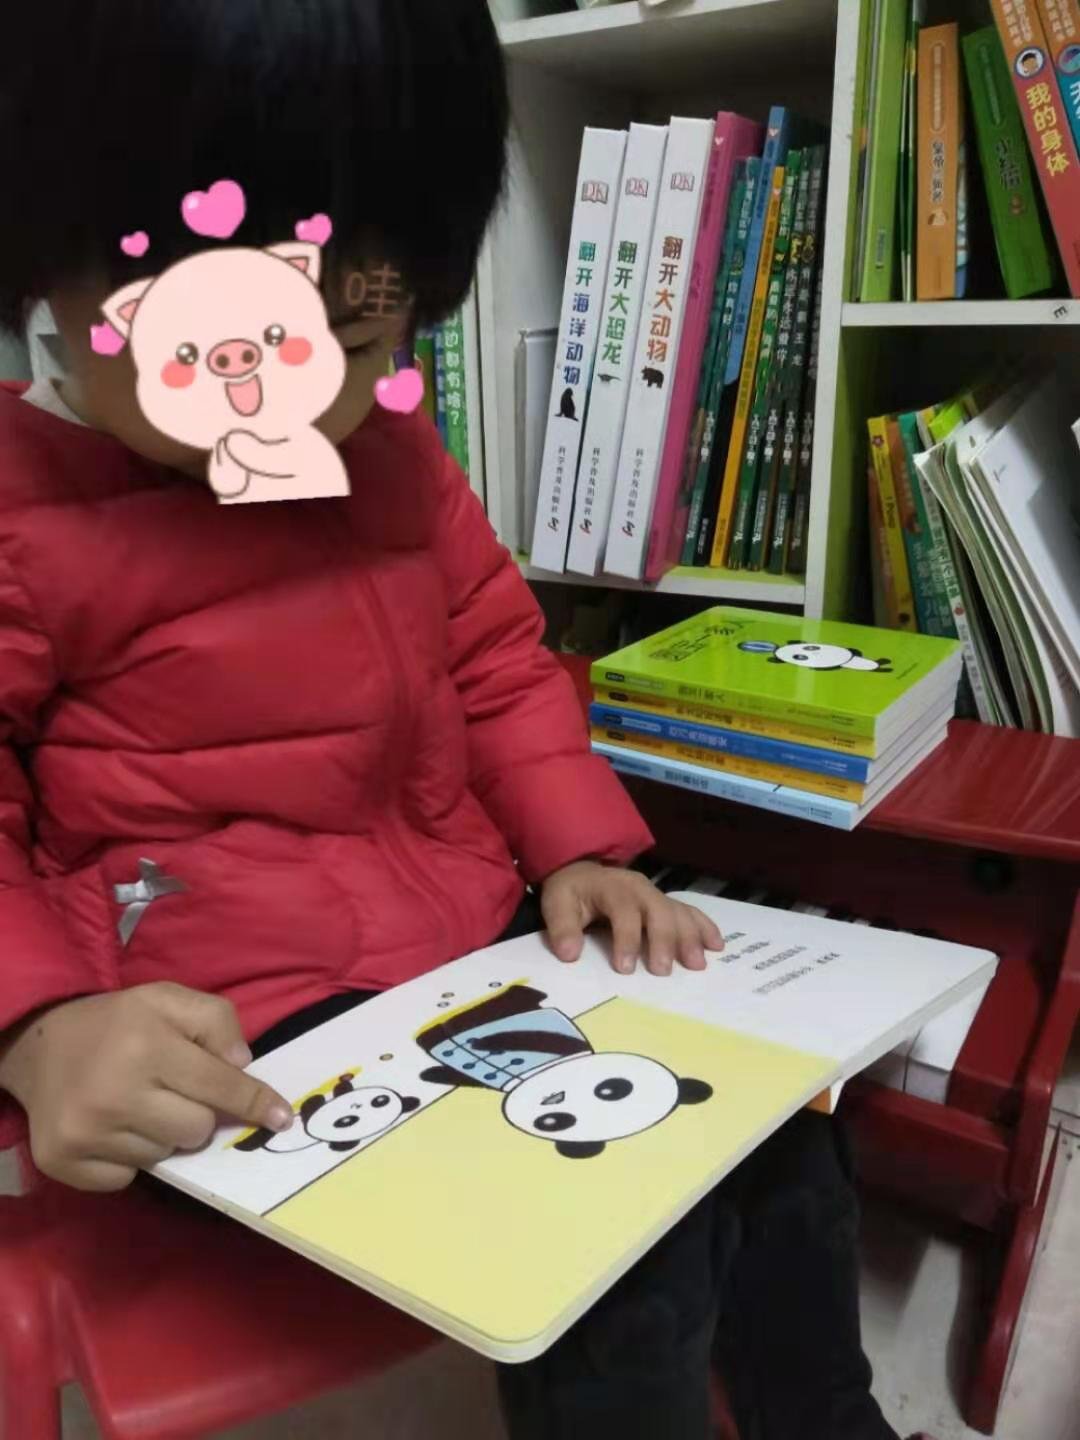 一套很中国风的绘本，24k圆角设计，更适合 3岁以下小娃看书习惯，新书收到后基本上没有味道。文字韵律感较强，不论是家长读给孩子听，或小朋友自己跟读都很适合。国宝萌萌哒的形象更是加分项，赞一下。